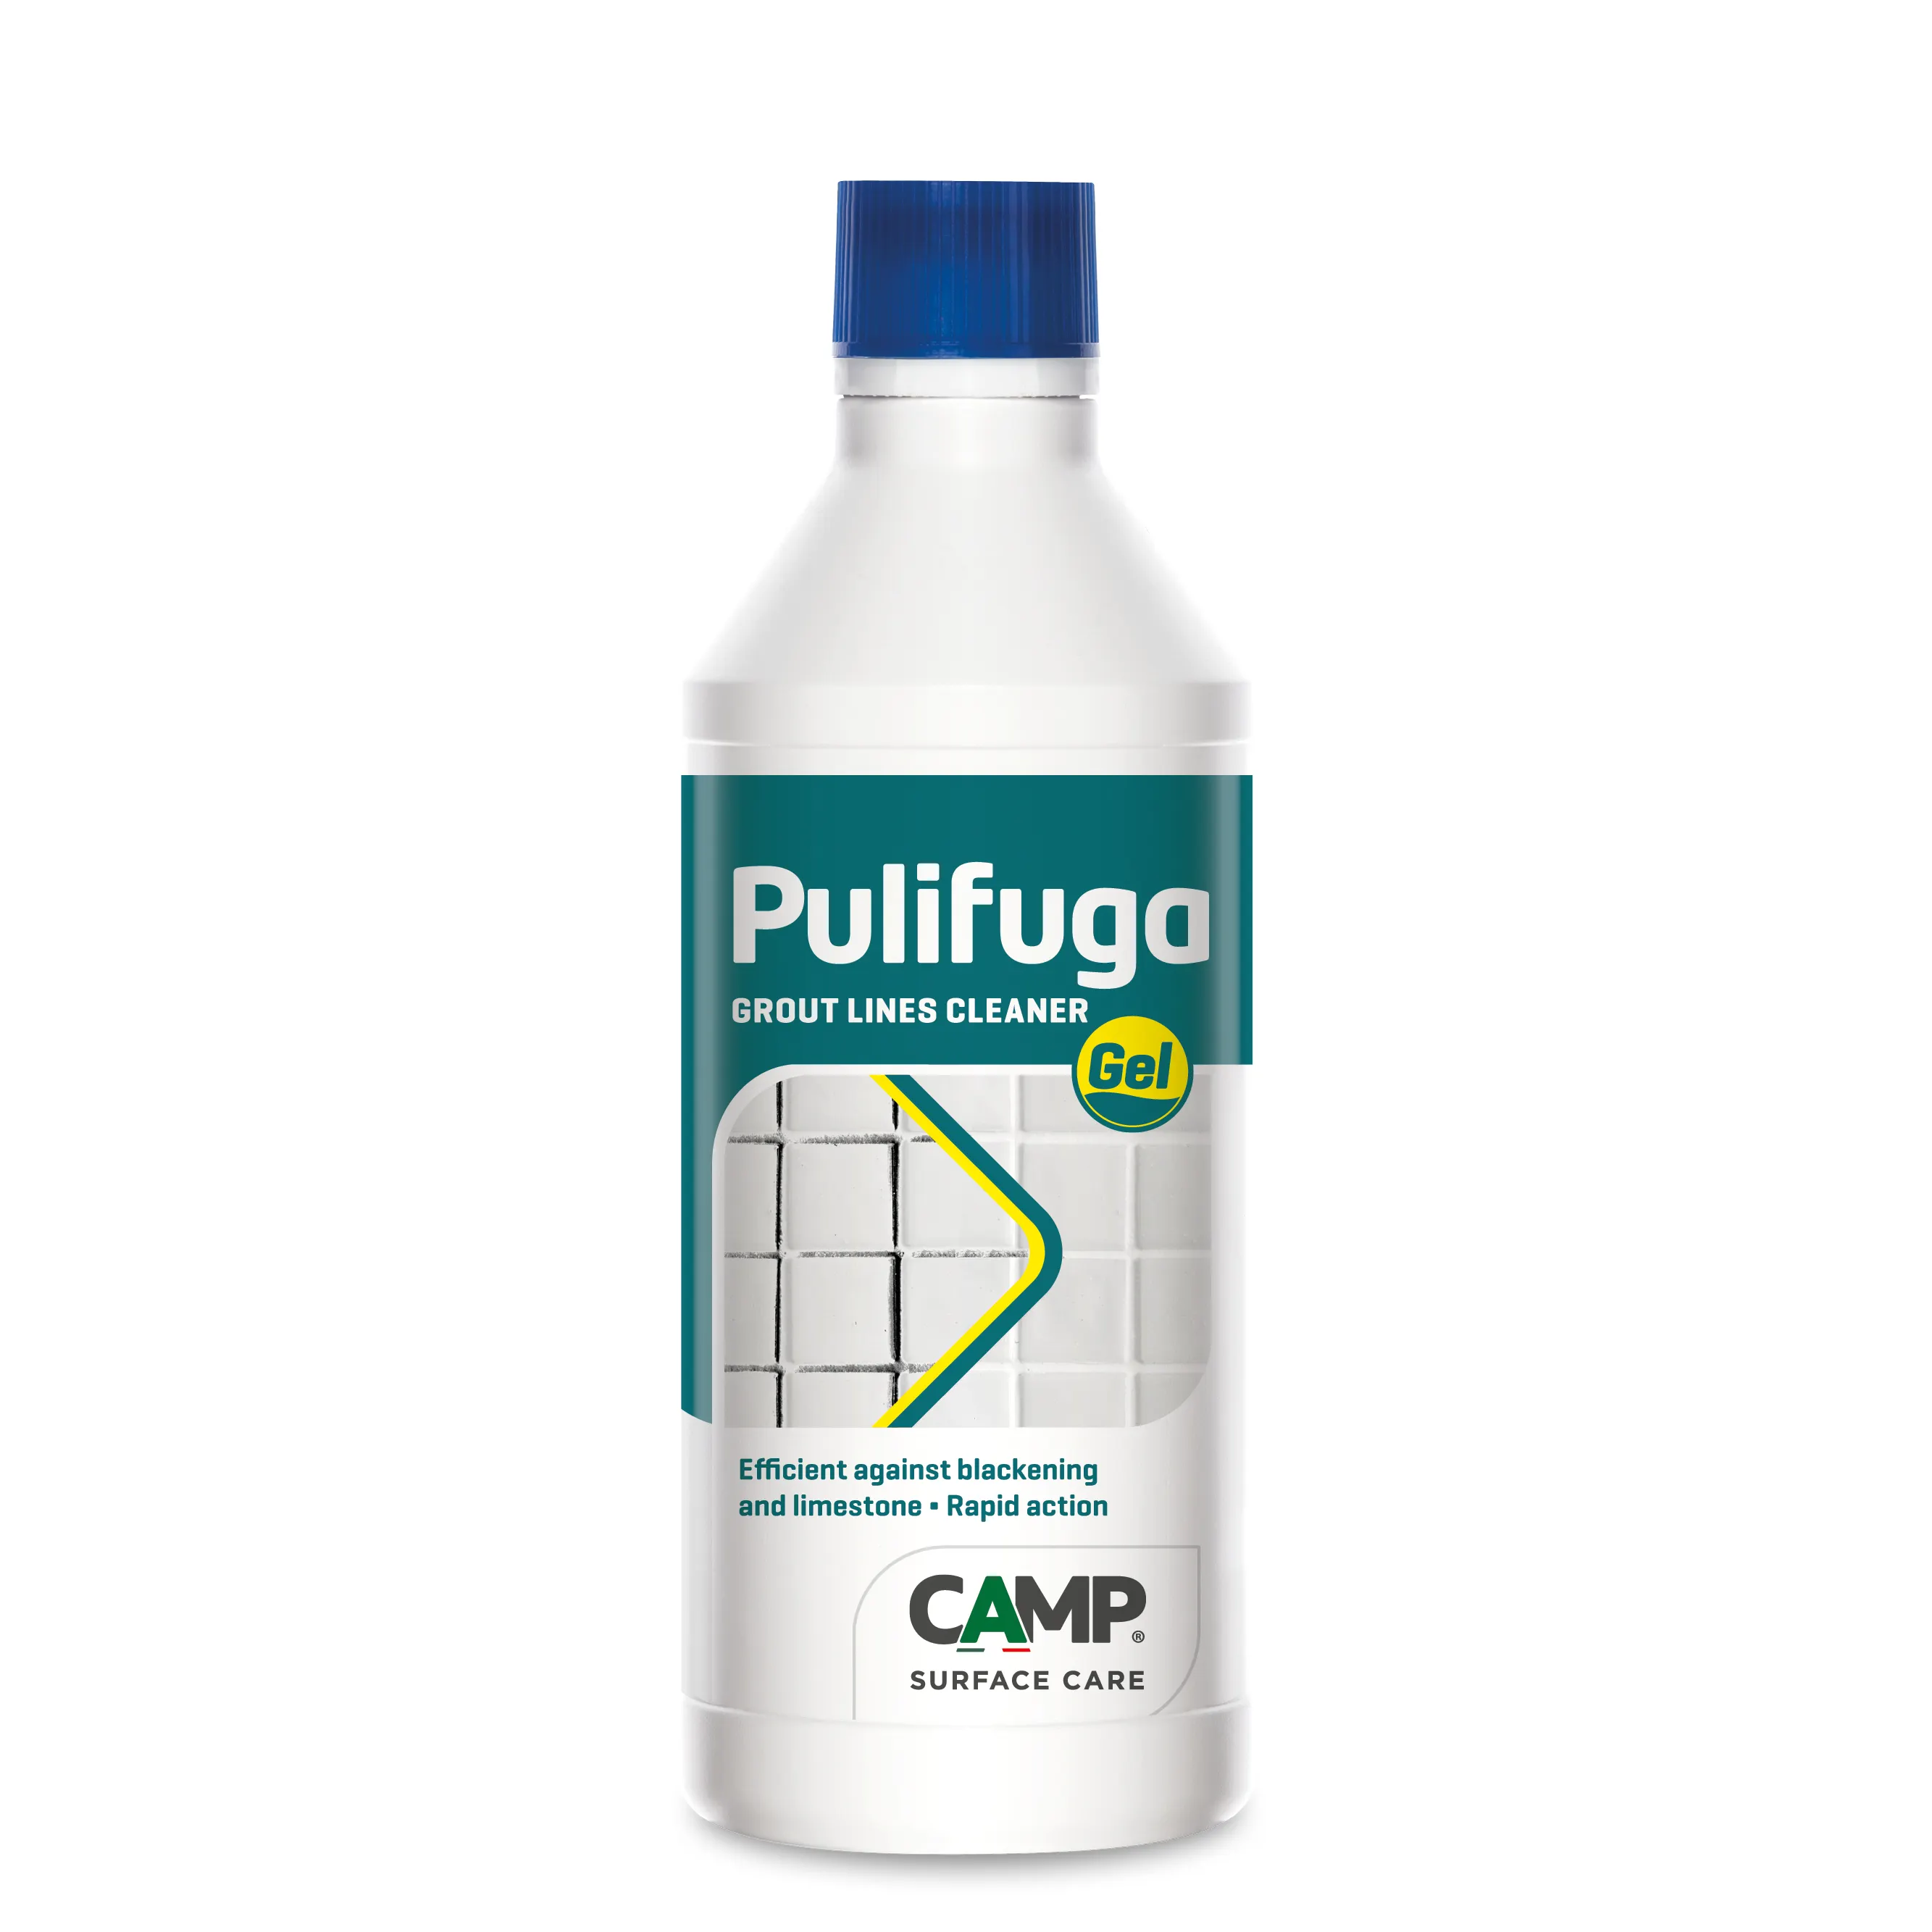 PULIFUGA-Gel limpiador de lechada, cubiertas de fórmula ideal para suelo y pared, elimina manchas de espinillas y moho, alto rendimiento